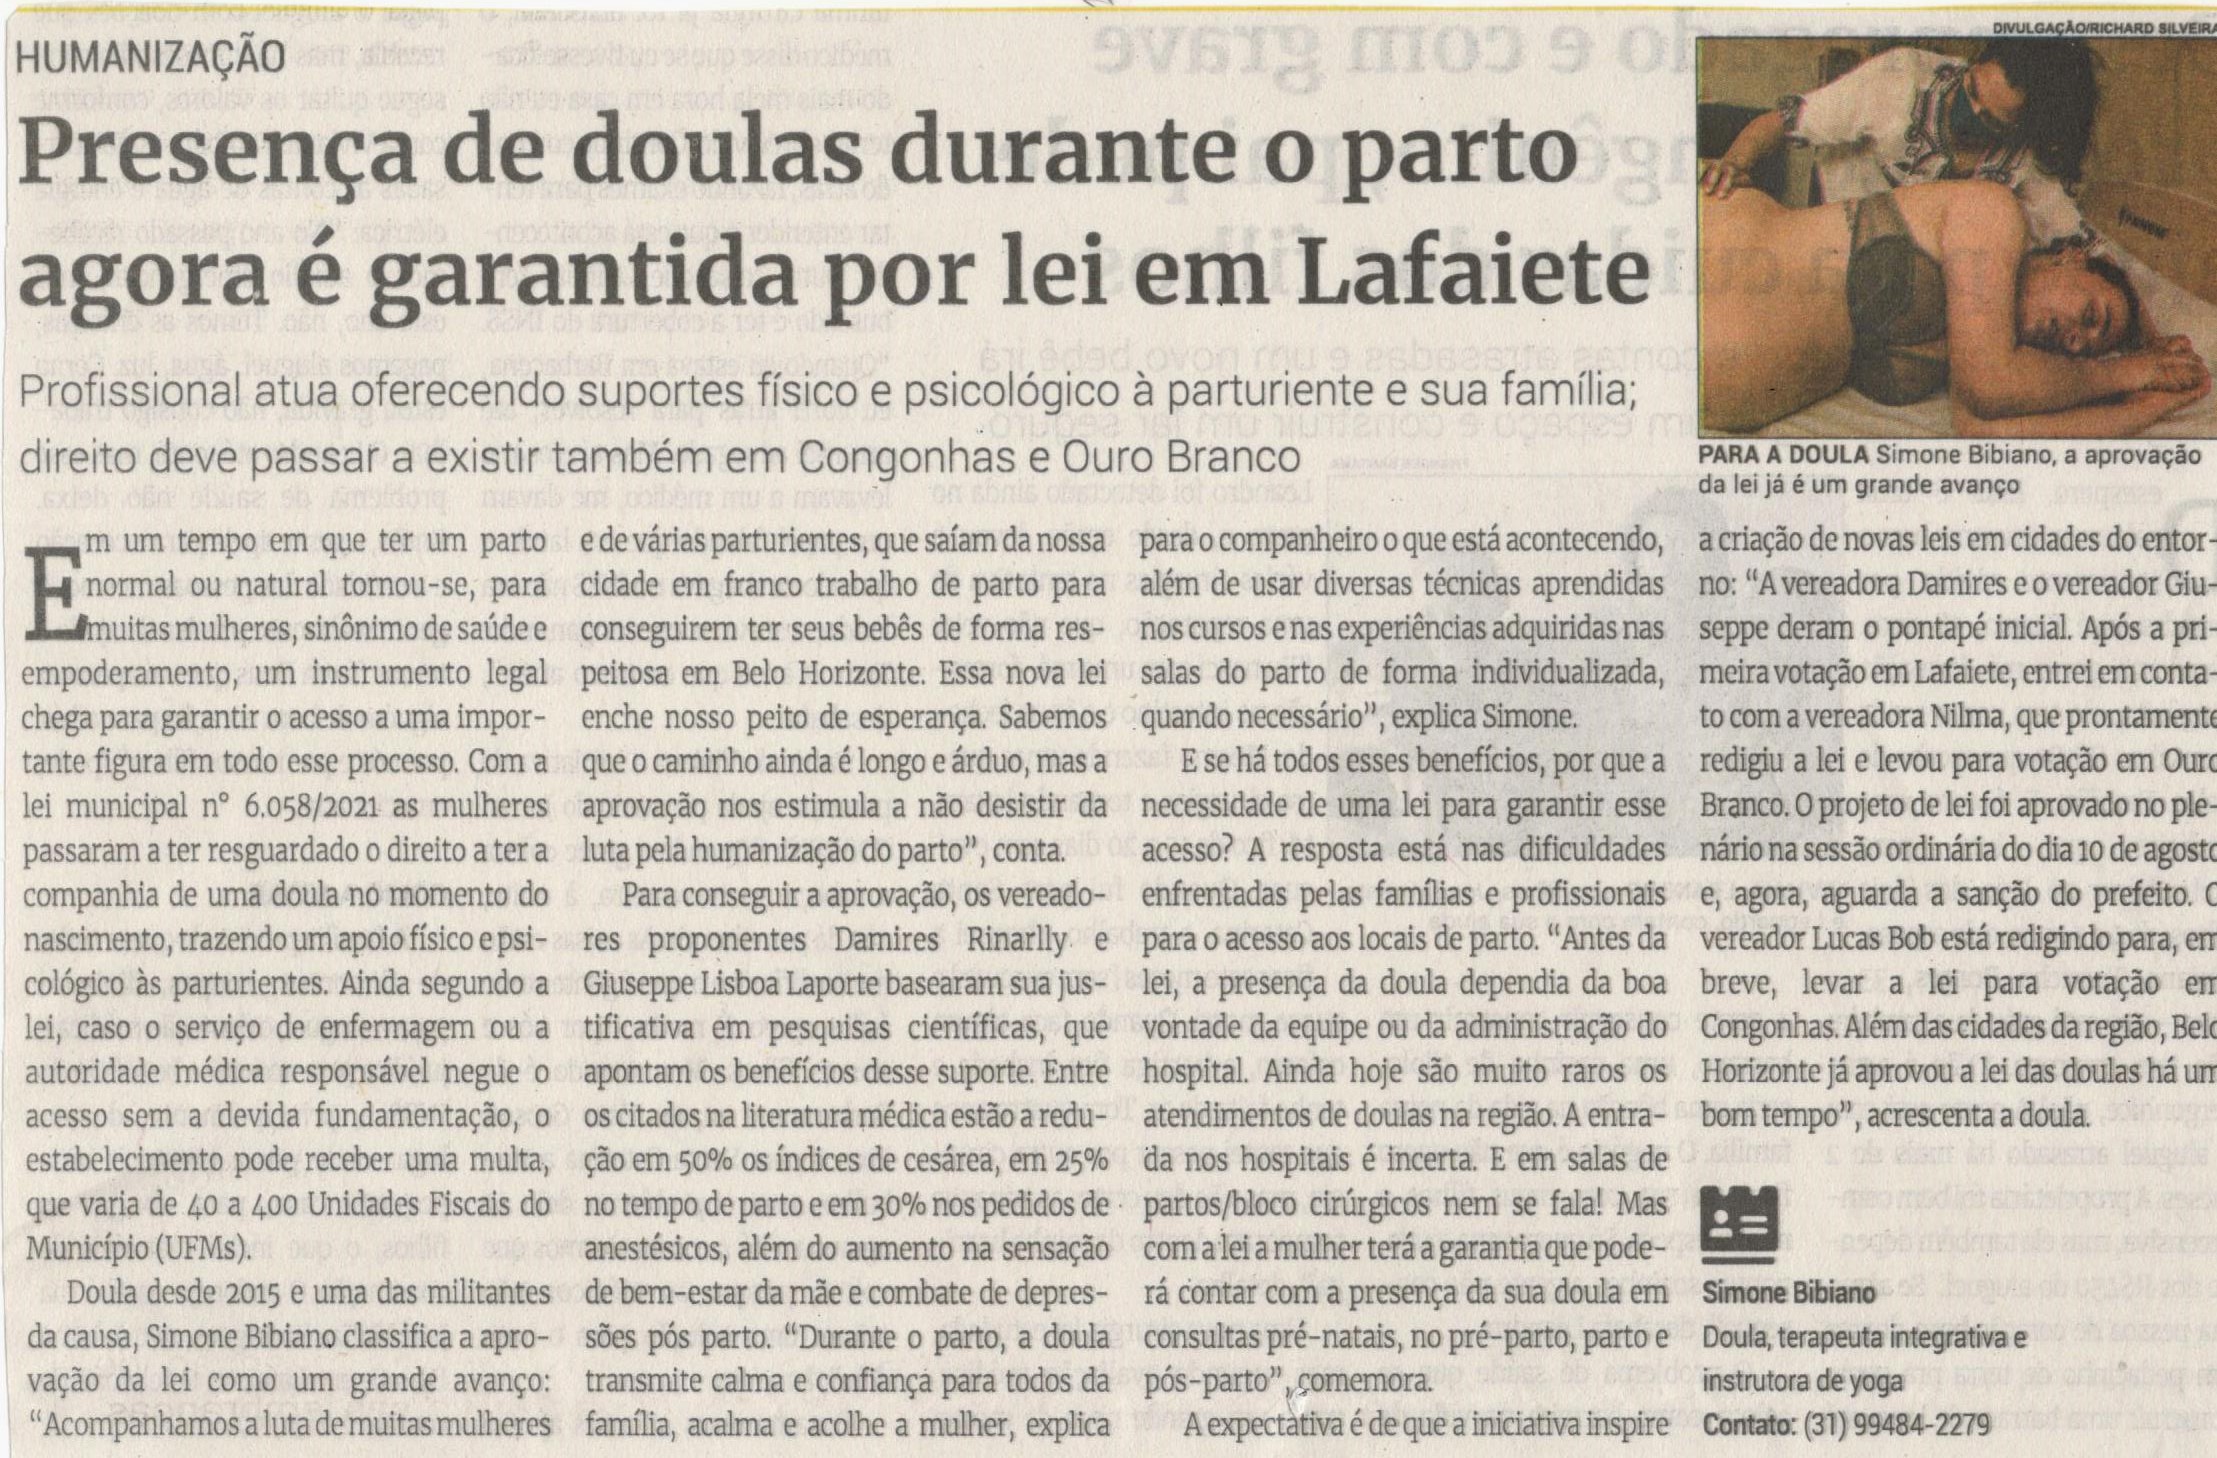 Presença de doulas durante o parto agora é garantida por lei em Lafaiete. Jornal Correio, Conselheiro Lafaiete, 04 Setembro 2021, 1592ª ed., Caderno saúde, p. 29.